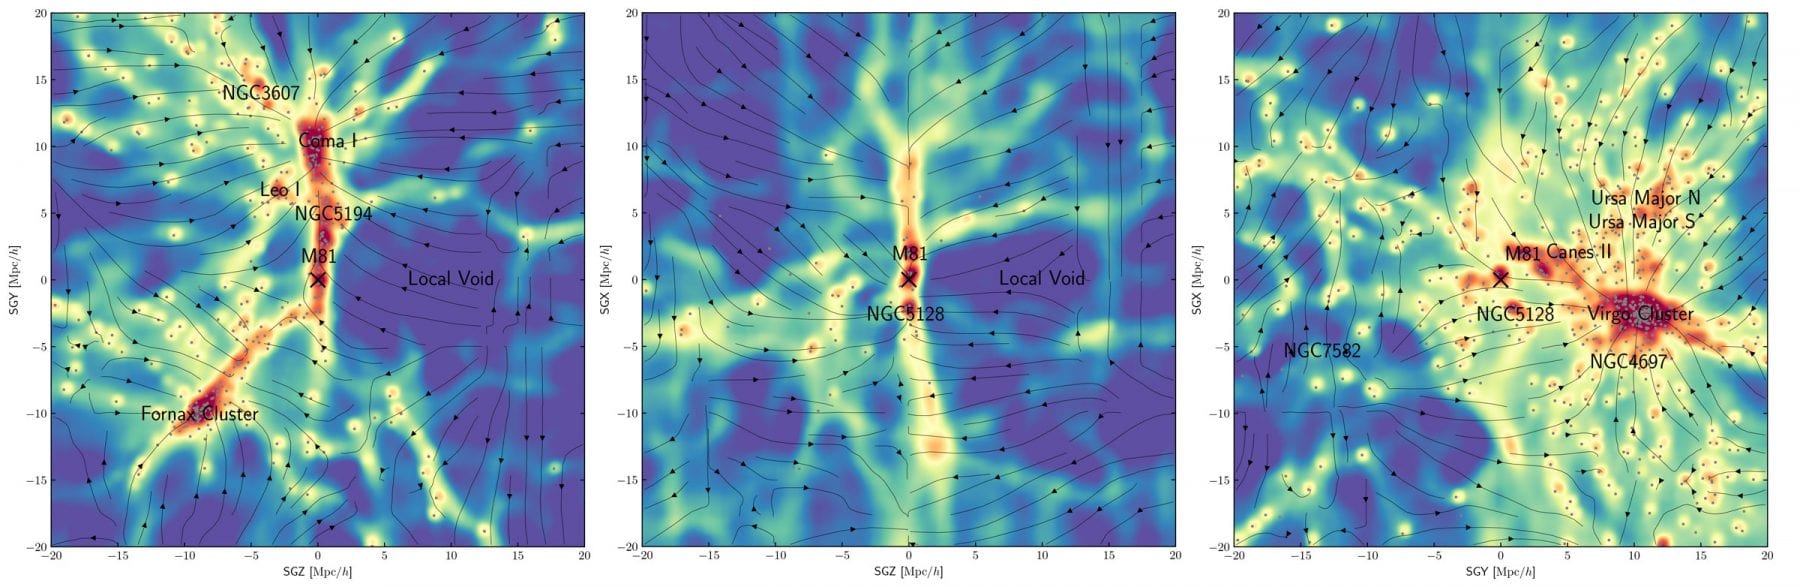 Карта темной материи нашей локальной вселенной. Маленький X отмечает галактику Млечный Путь, где мы находимся, в то время как все точки соответствуют другим галактикам поблизости. Стрелки, которые вы видите, обозначают движение нашей локальной вселенной под действием силы тяжести. Предоставлено: Hong et. др., Astrophysical Journal 